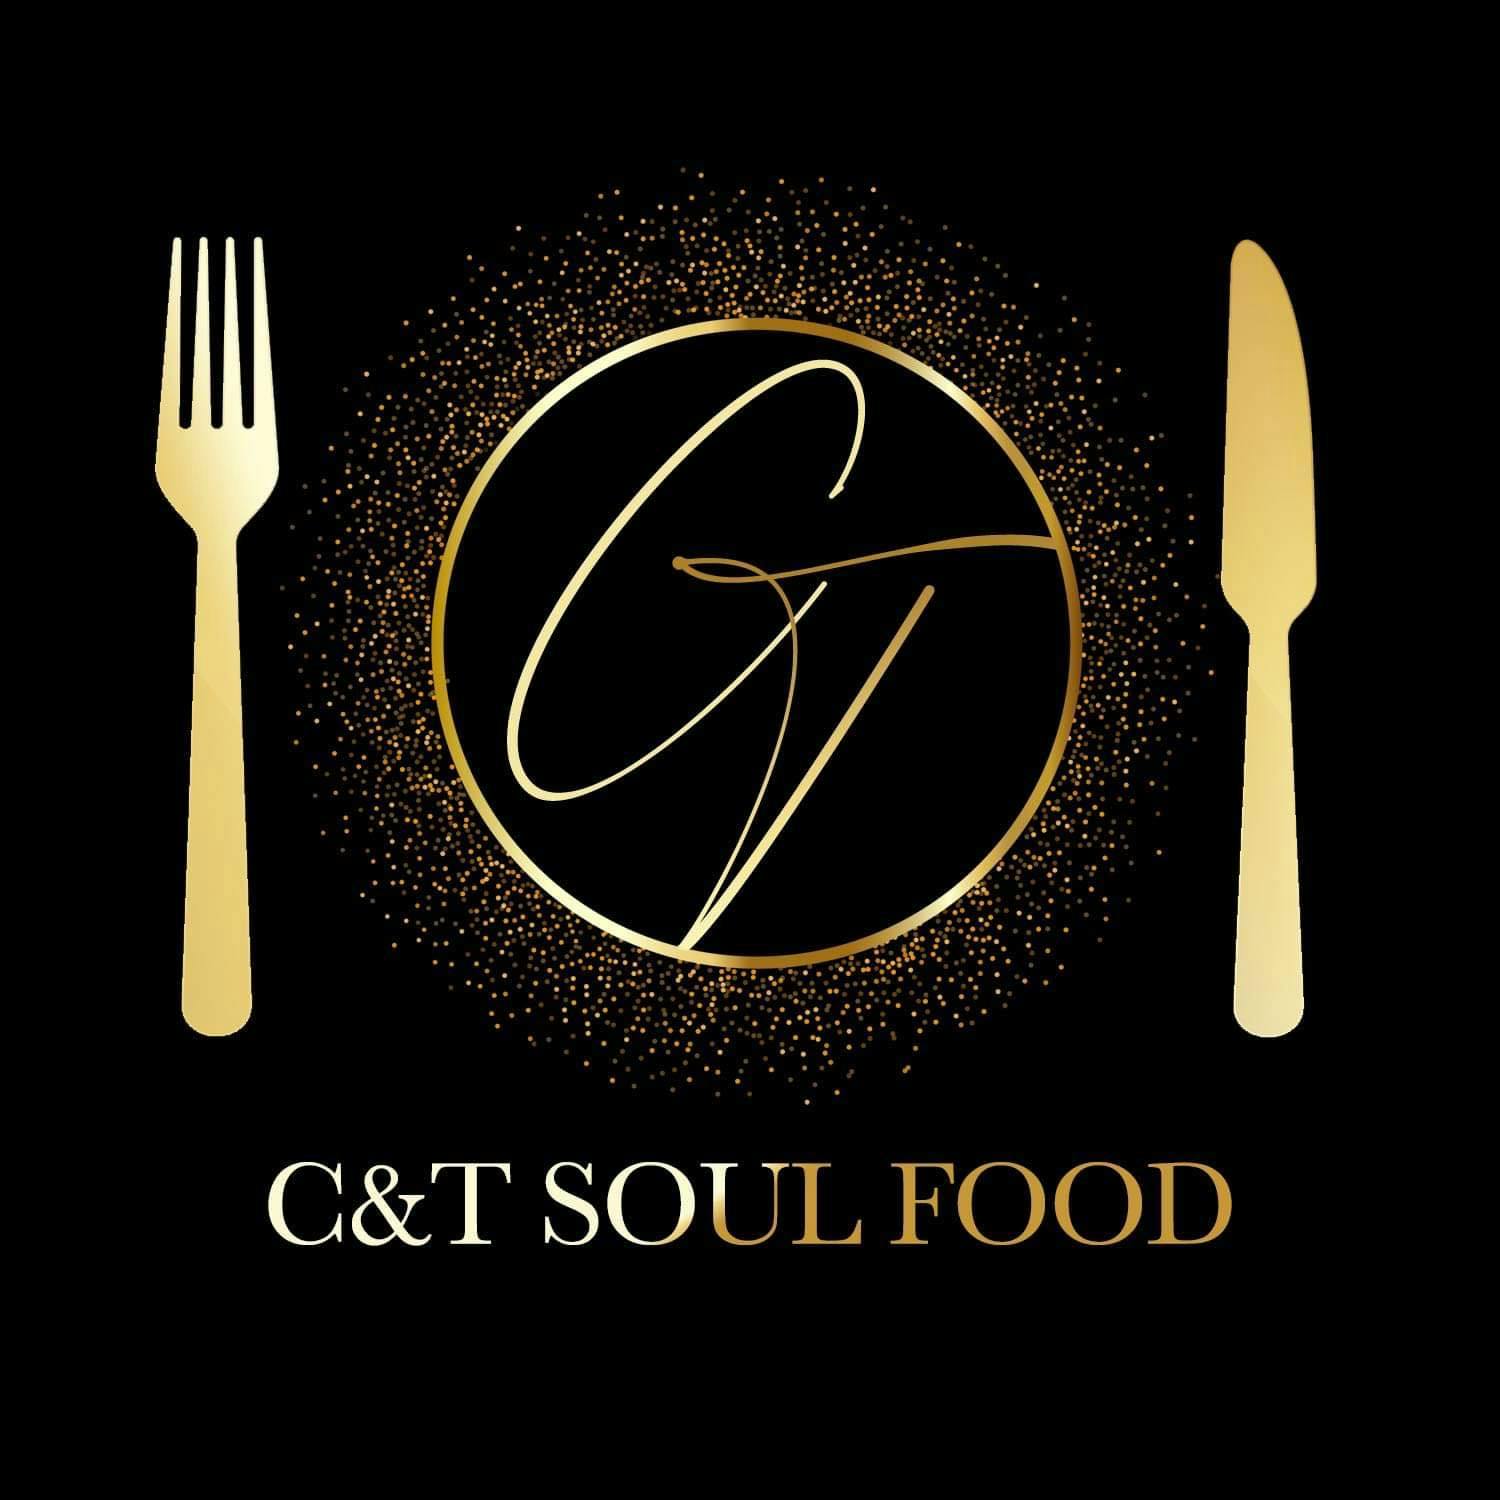 C&T's Soul Food menu in Eau Claire, WI 54701